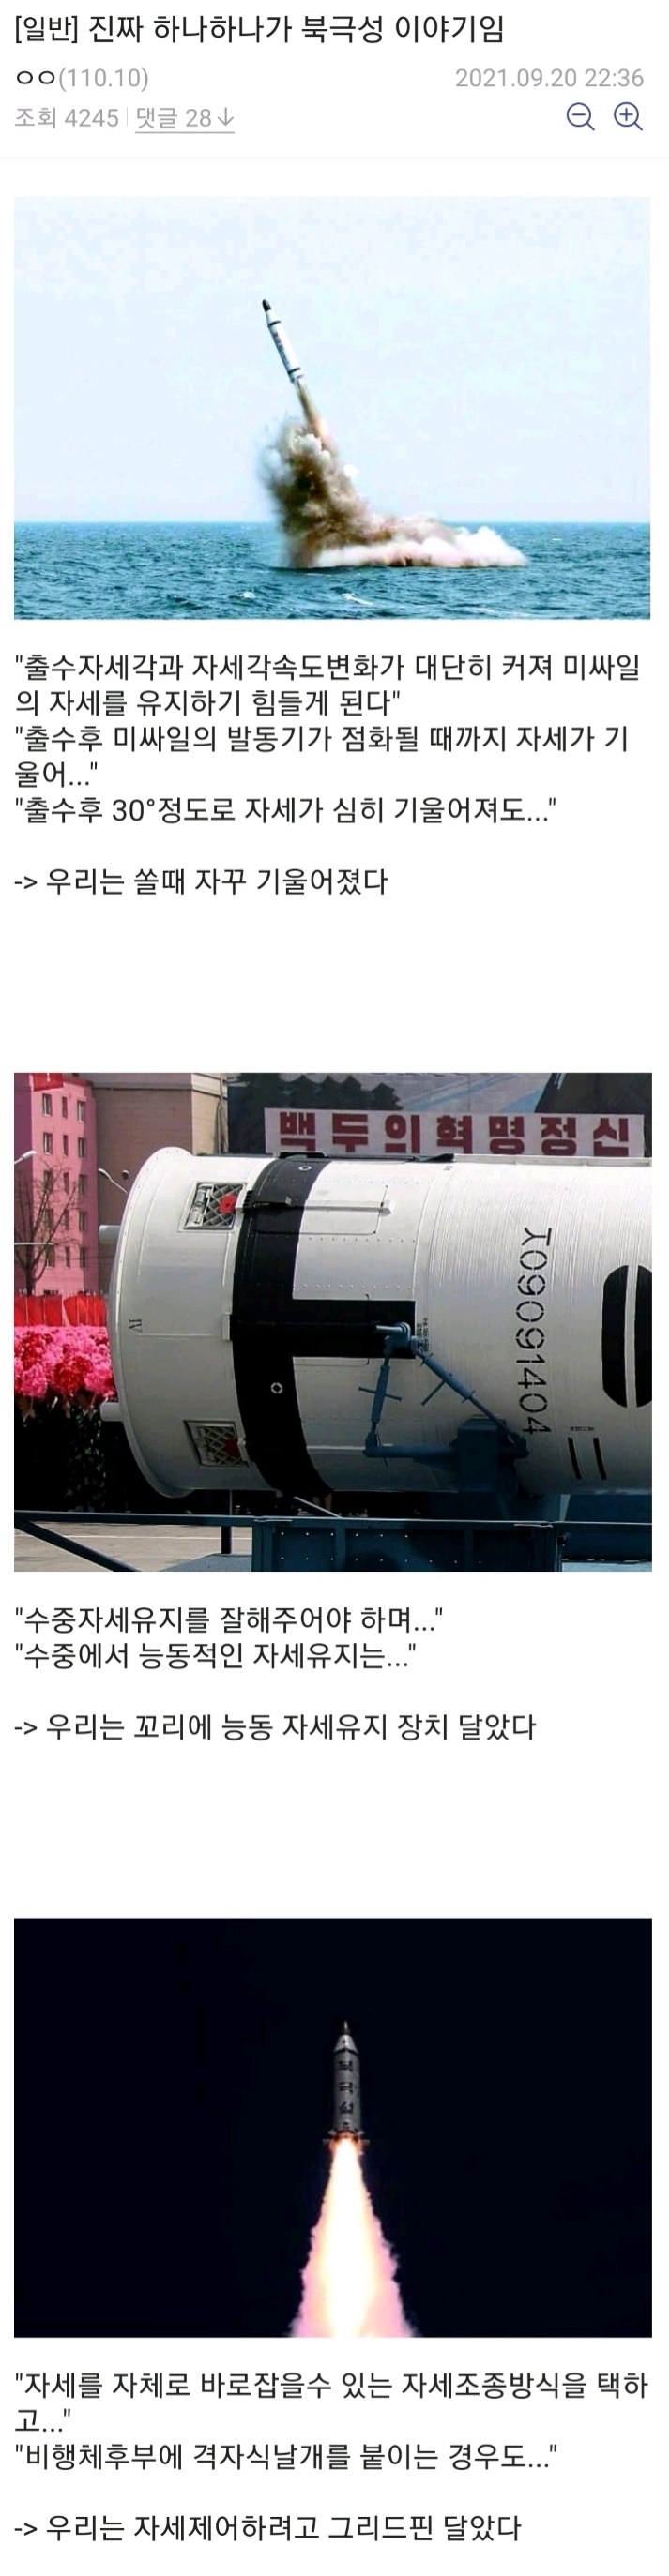 북한이 한국 SLBM 피드백해준게 맞는 이유.jpg